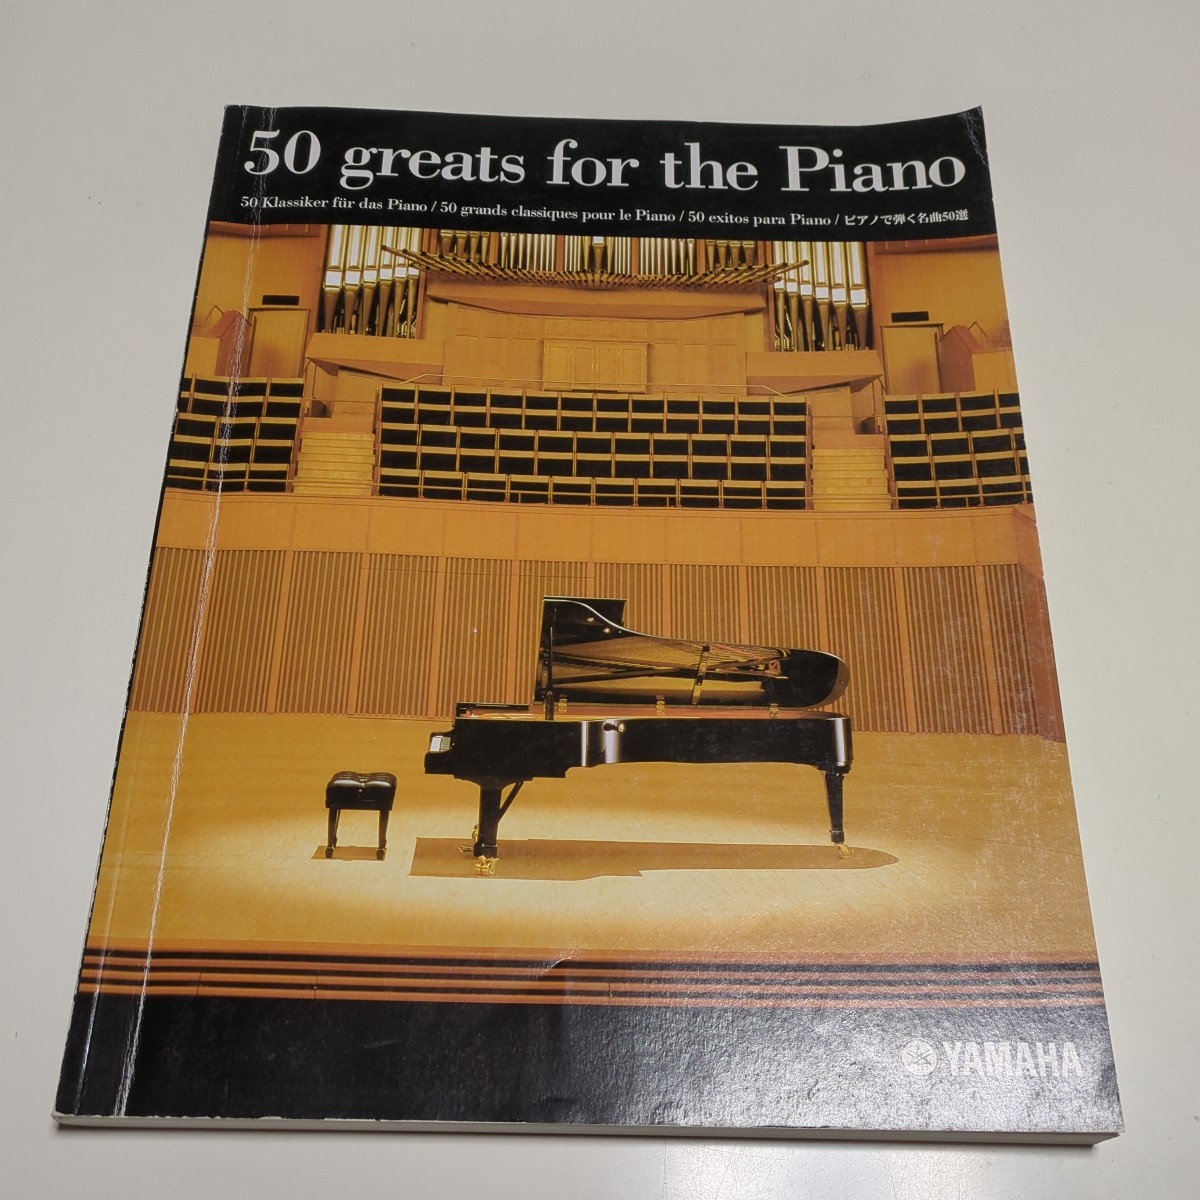 ピアノで弾く名曲50選 ヤマハ 50 greats for the piano 中古 楽譜 クラシック 古典音楽 YAMAHA 名曲